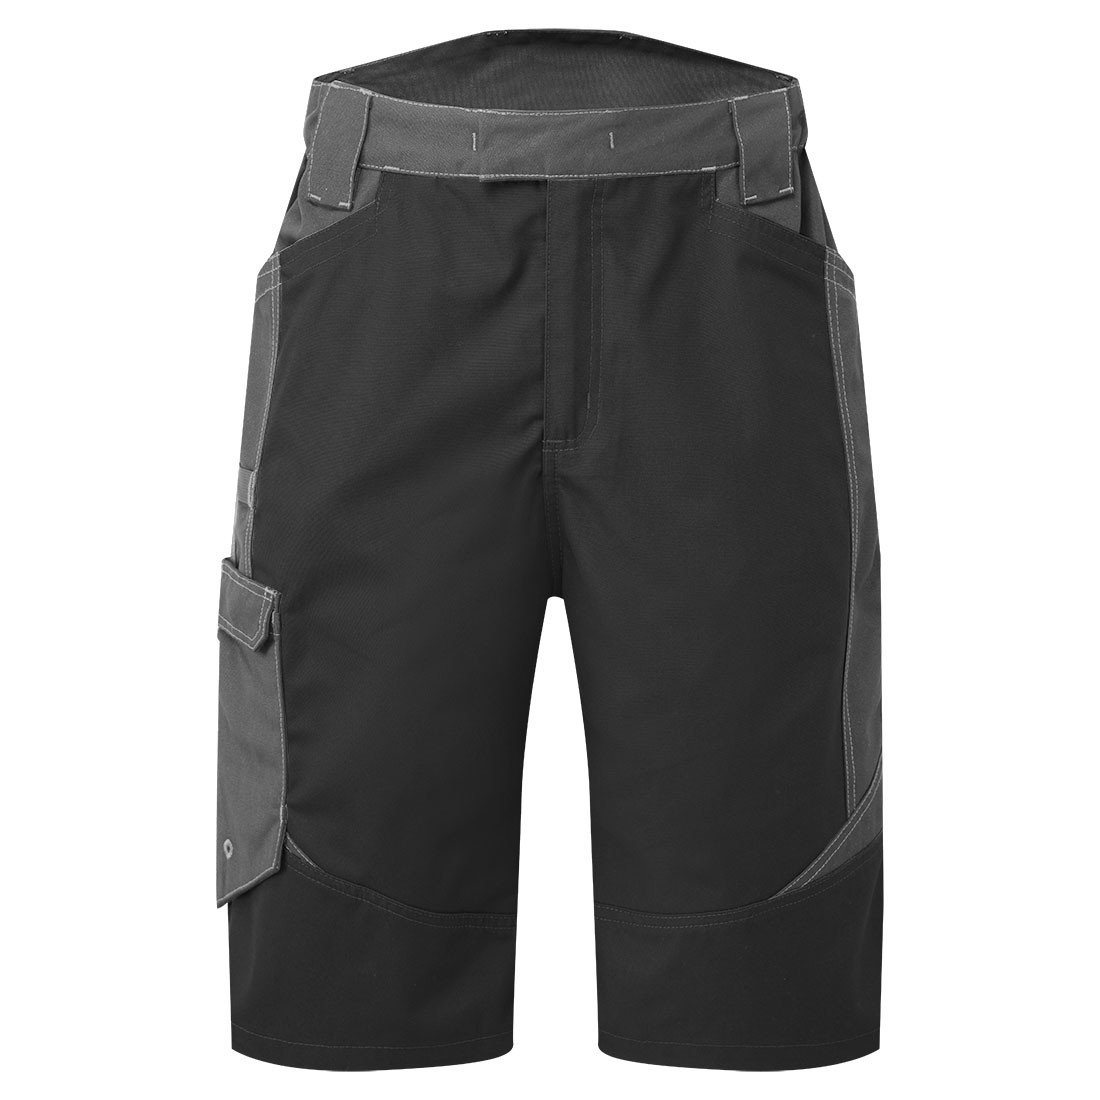 WX3 kurze Hose für Industriewäsche - Arbeitskleidung